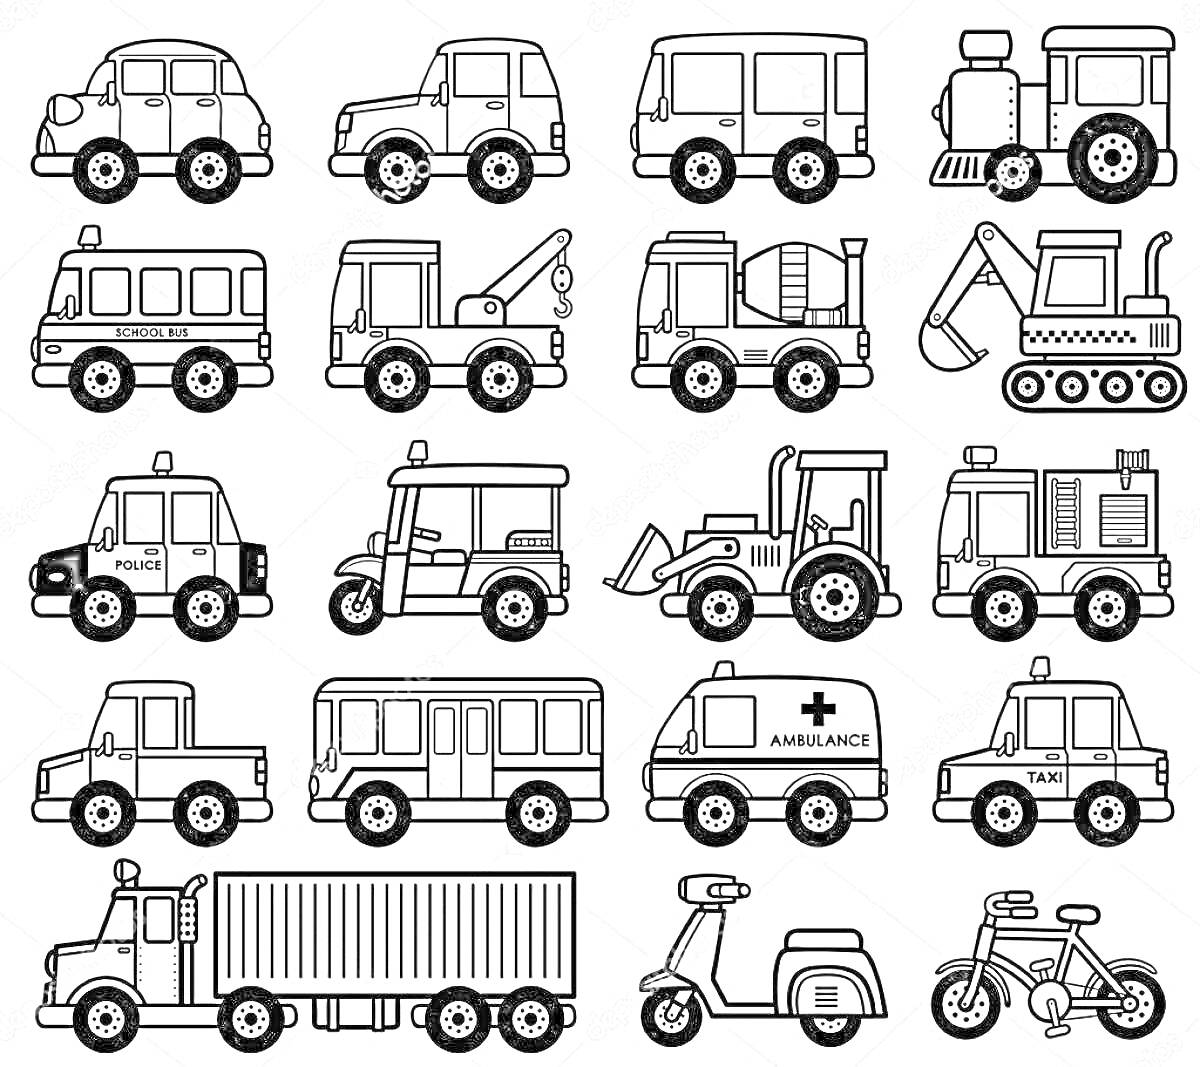 Раскраска маленькие машинки: легковые автомобили, микроавтобусы, трактор, полицейская машина, эвакуатор, бетономешалка, экскаватор, грузовик, скутер, велосипед, пожарная машина, больничная машина, такси